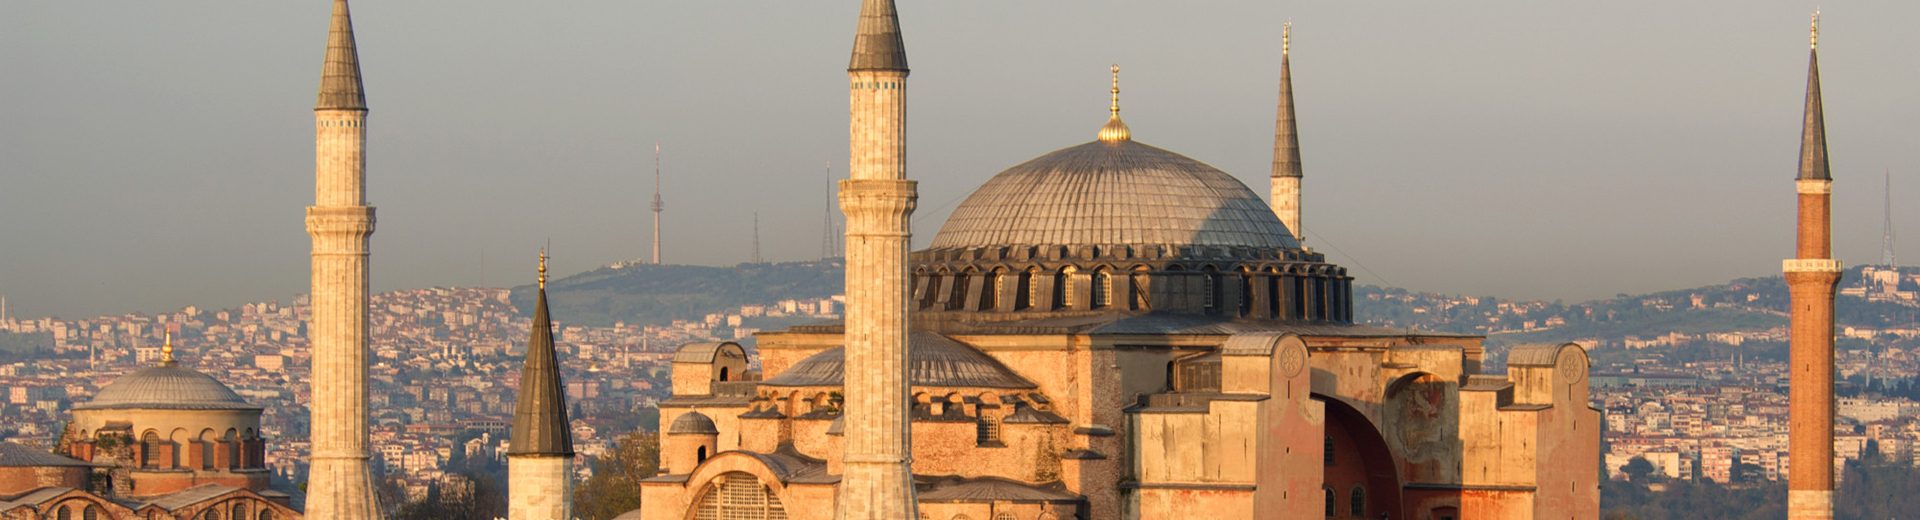 Turismo na Europa: Turquia guarda muitas belezas e história por entre suas mesquitas e construções